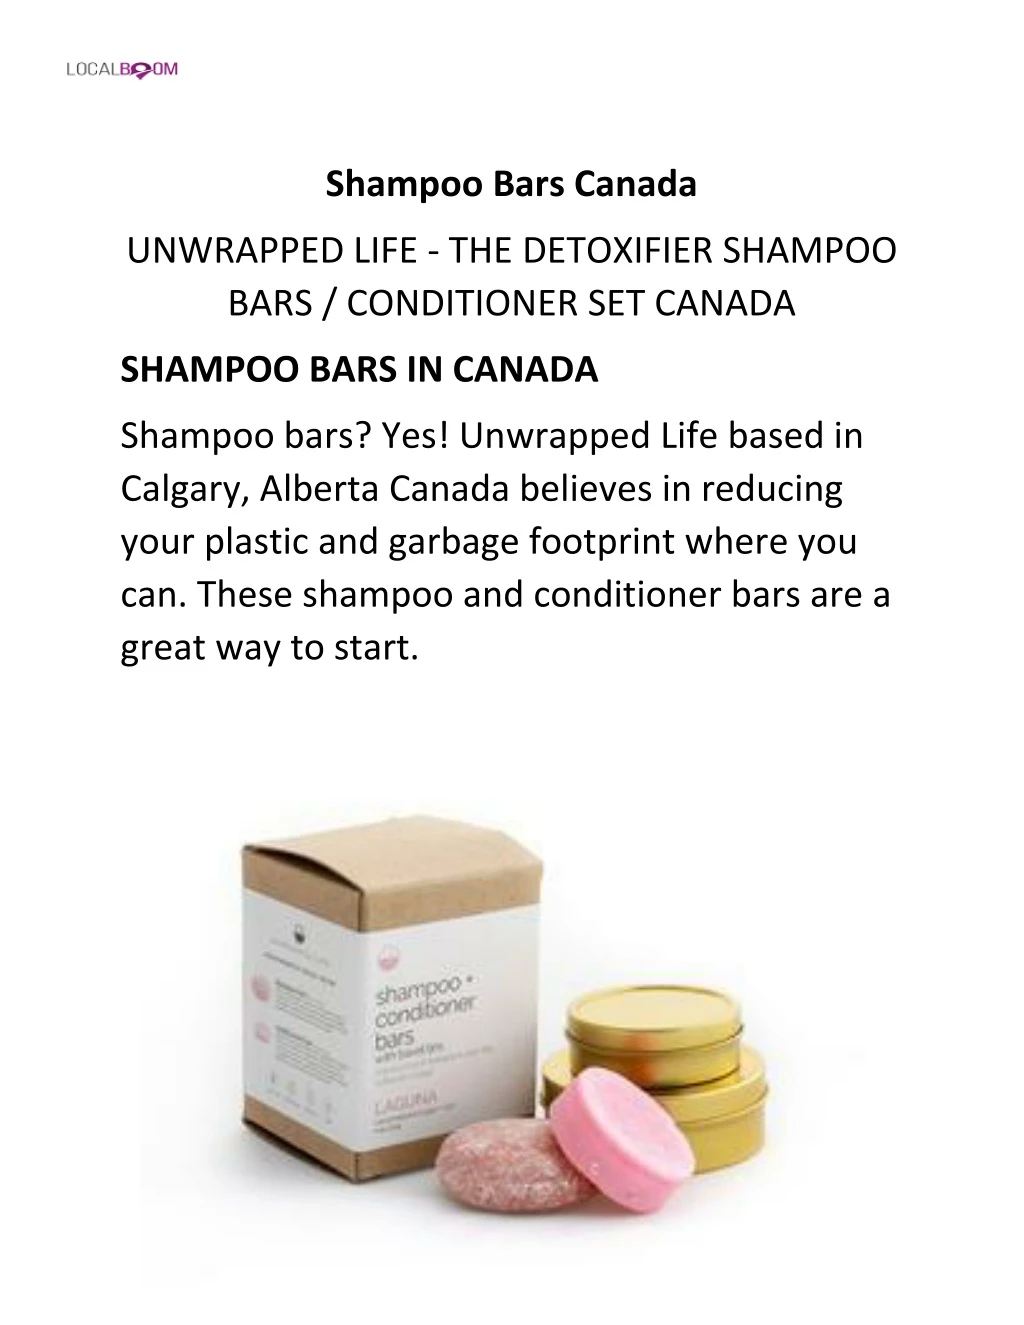 shampoo bars canada n.